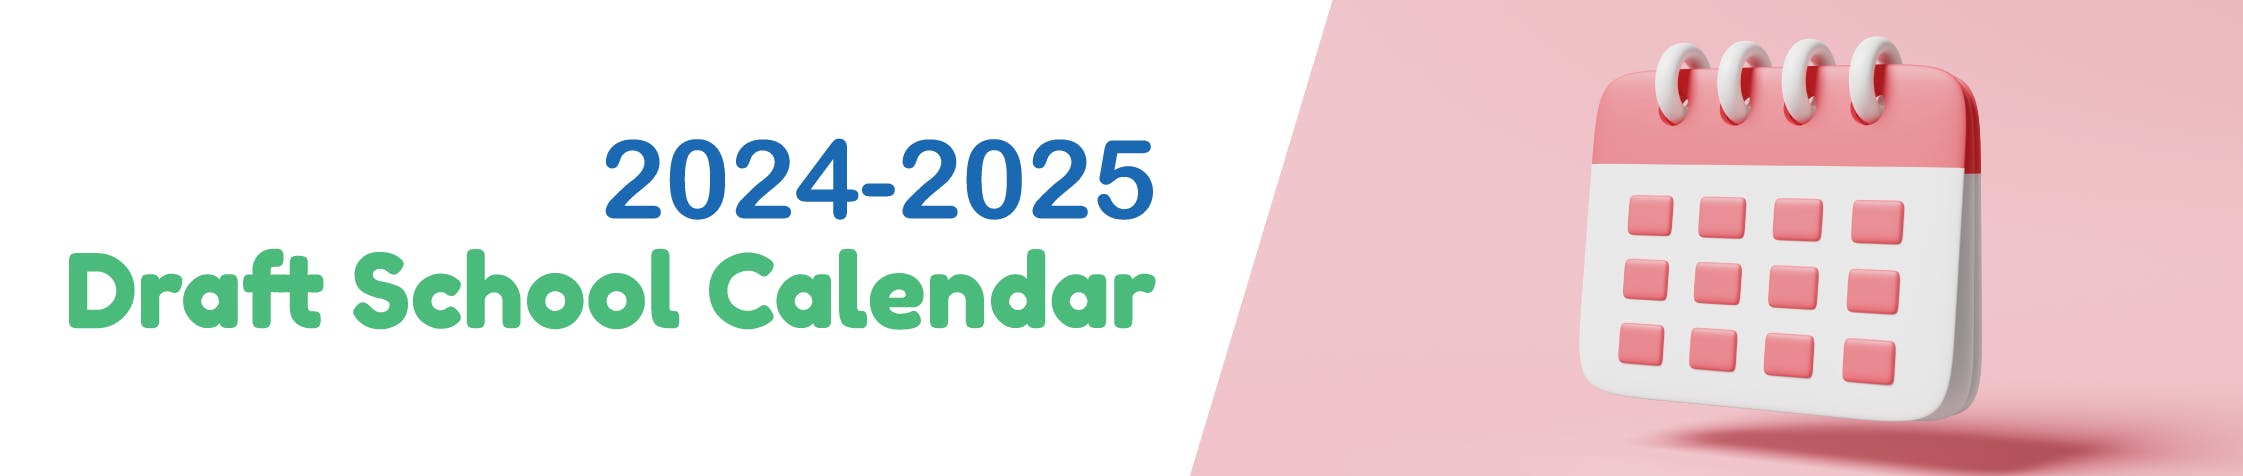 2021-2022 school calendar banner